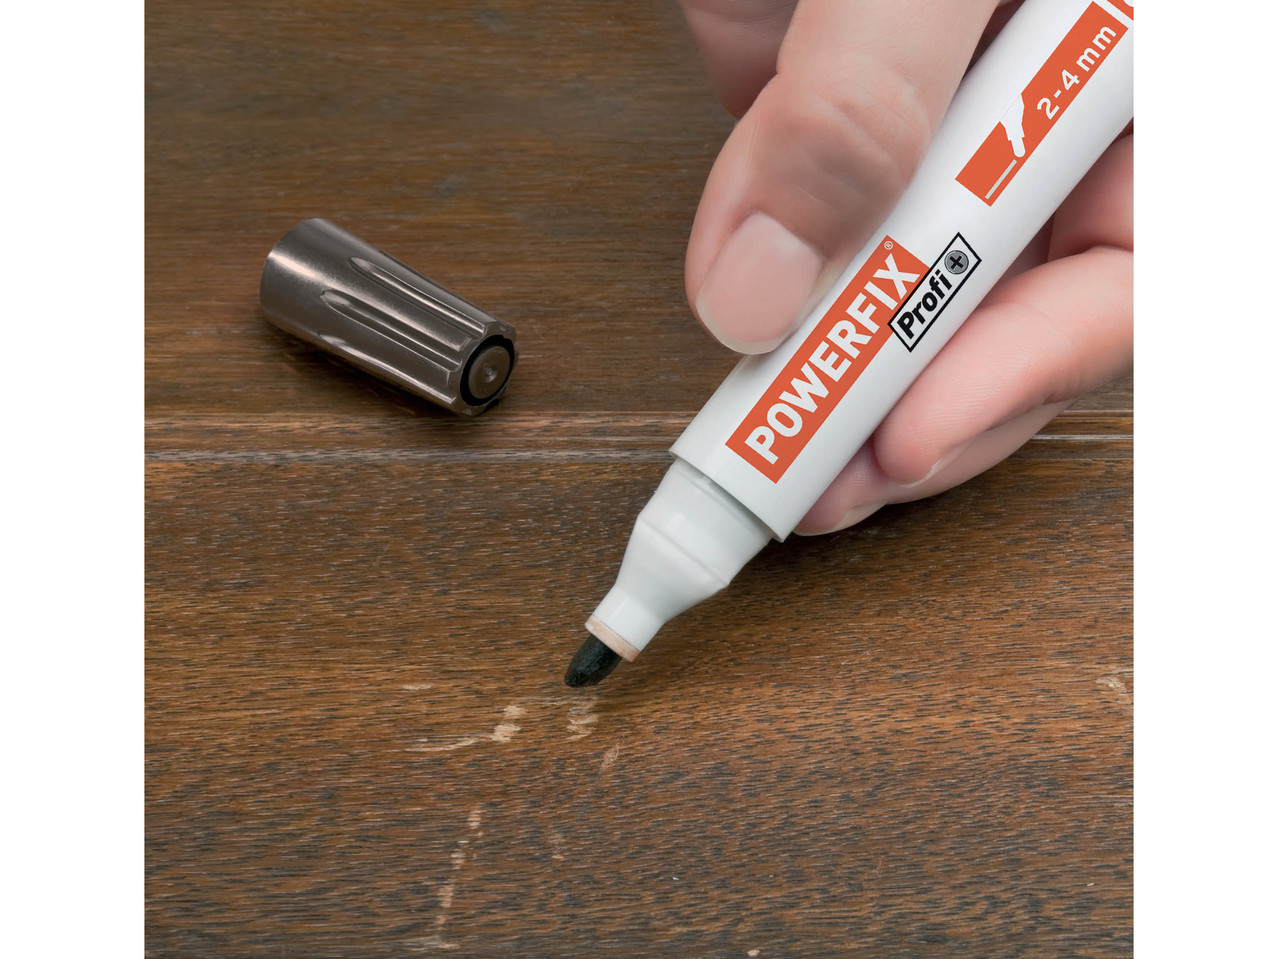 POWERFIX/UHU Touch-Up Pen/ Super Glue